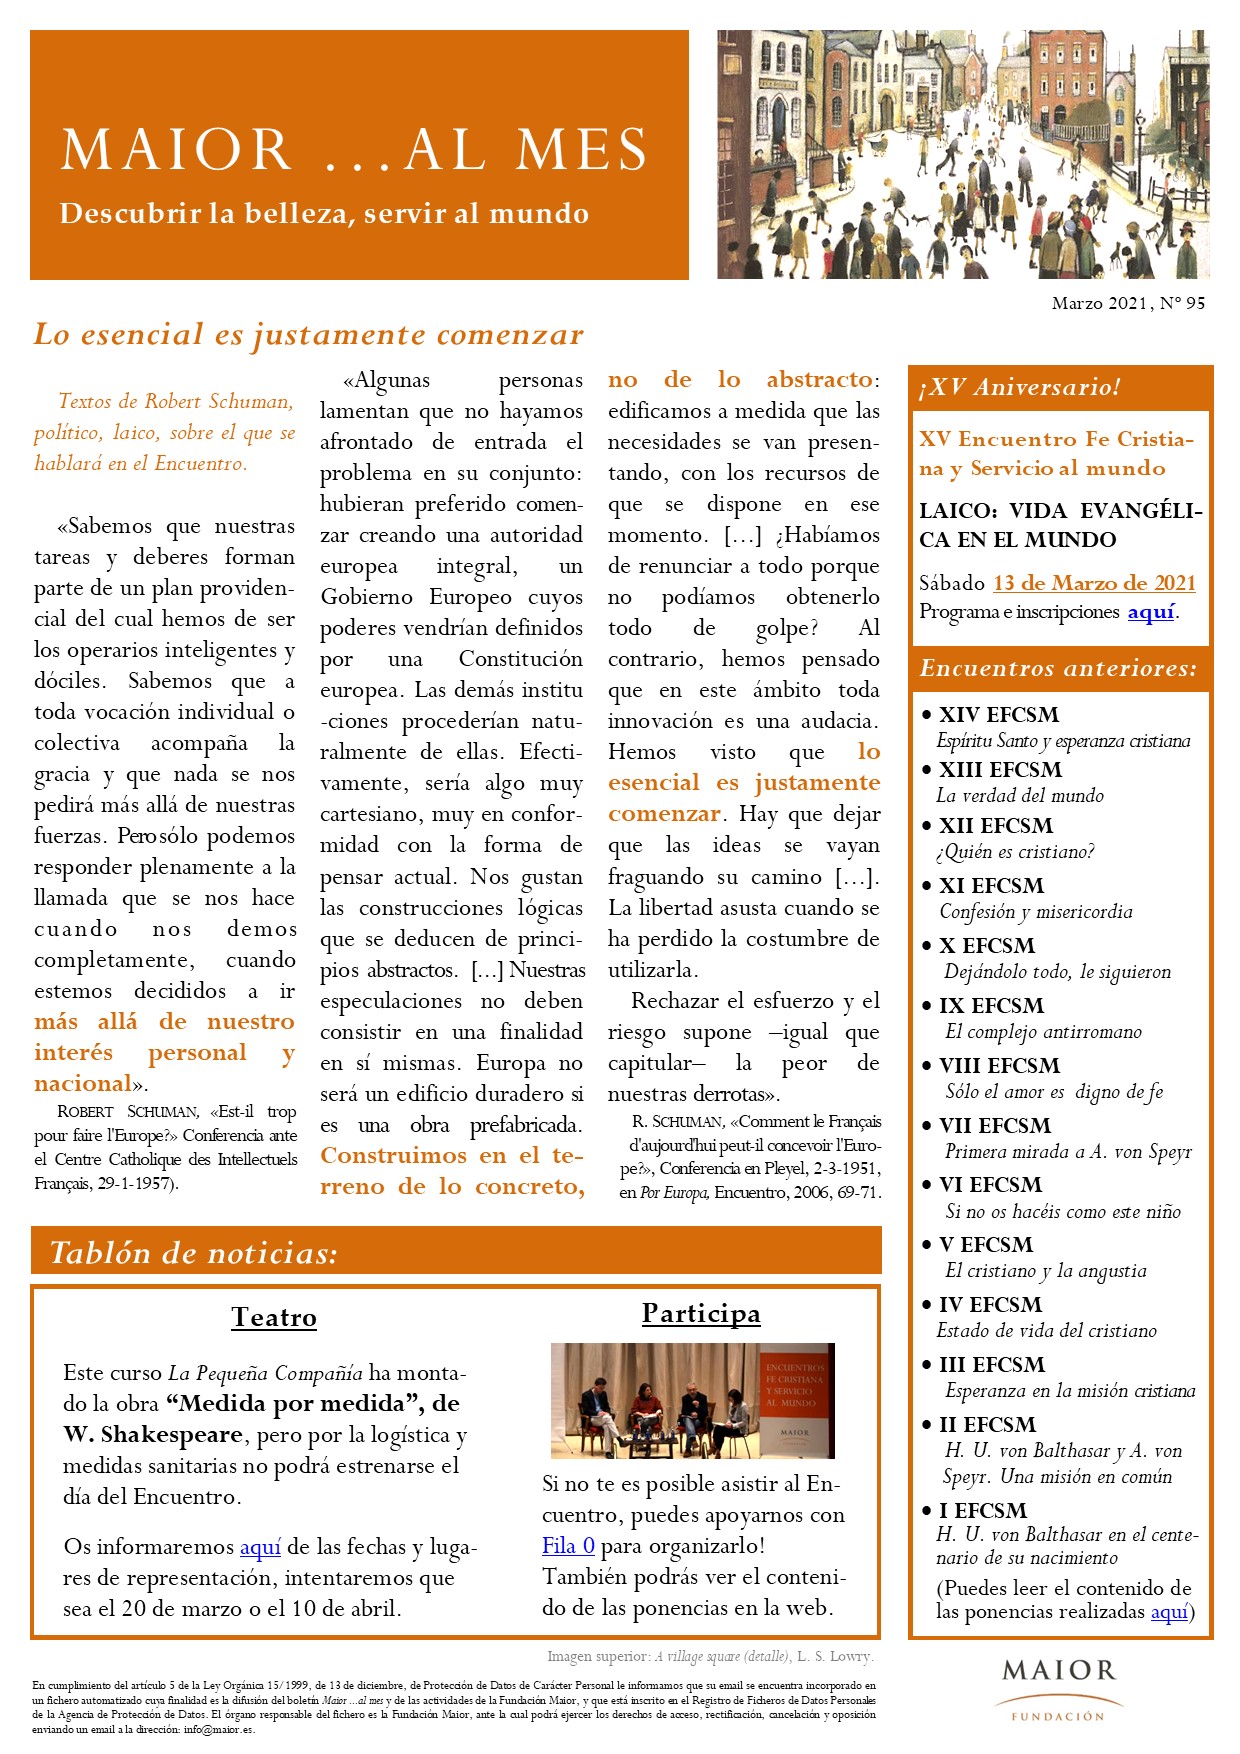 Boletín mensual de noticias y actividades de la Fundación Maior. Edición de febrero 2021